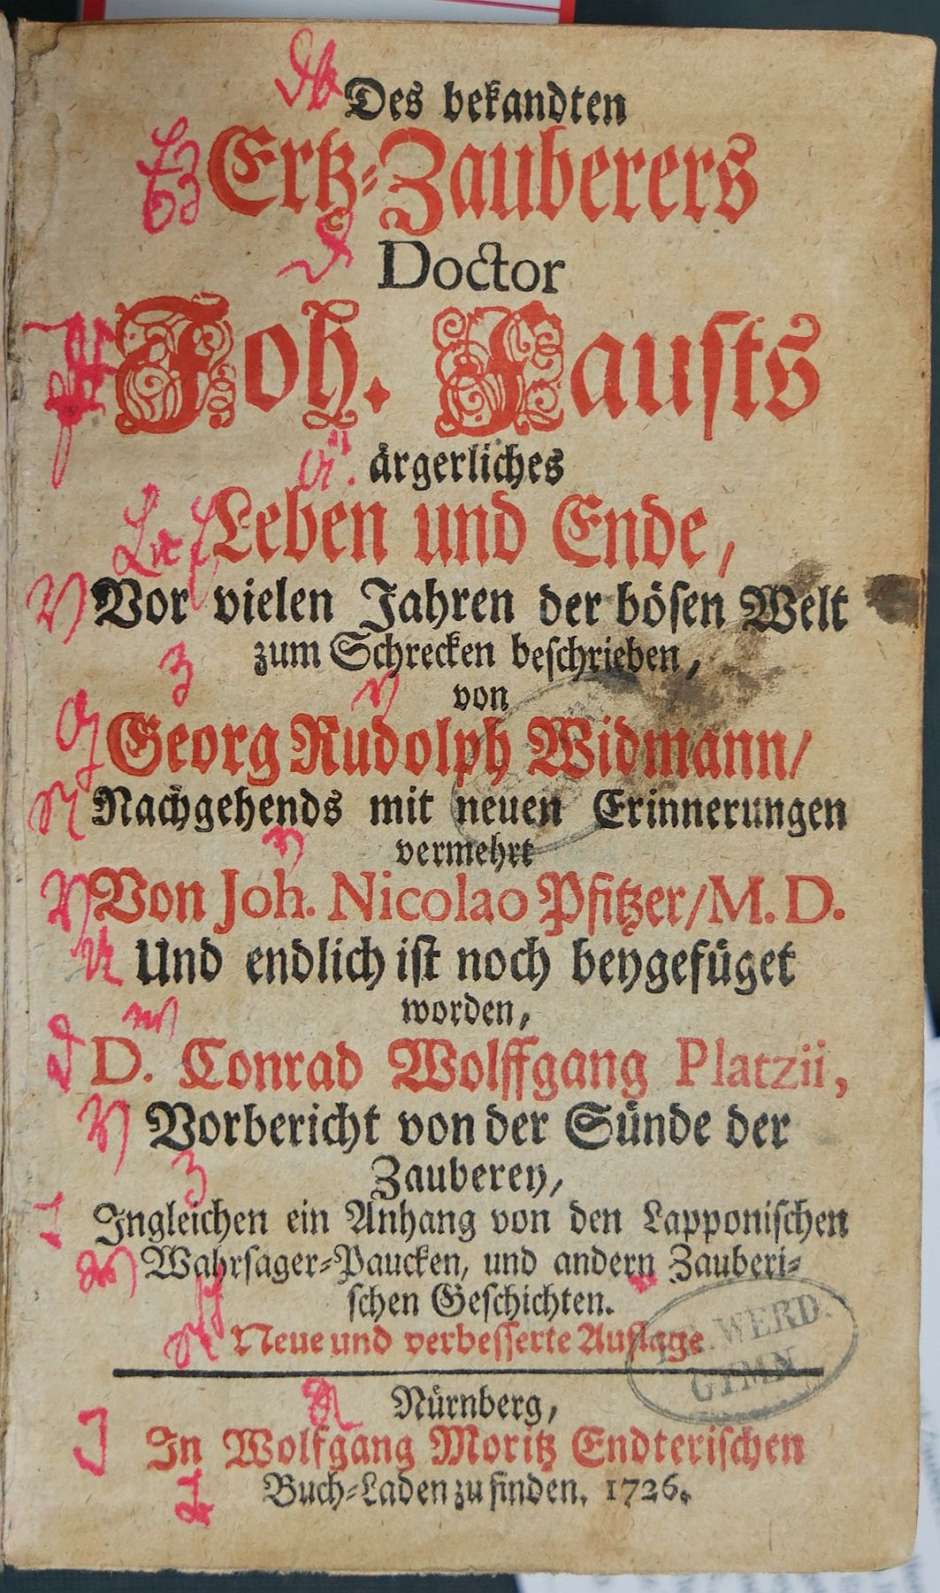 Lot 2196, Auction  115, Widmann, Georg Rudolf, Des bekandten Ertz-Zauberers Doctor Joh. Fausts ärgerliches Leben 